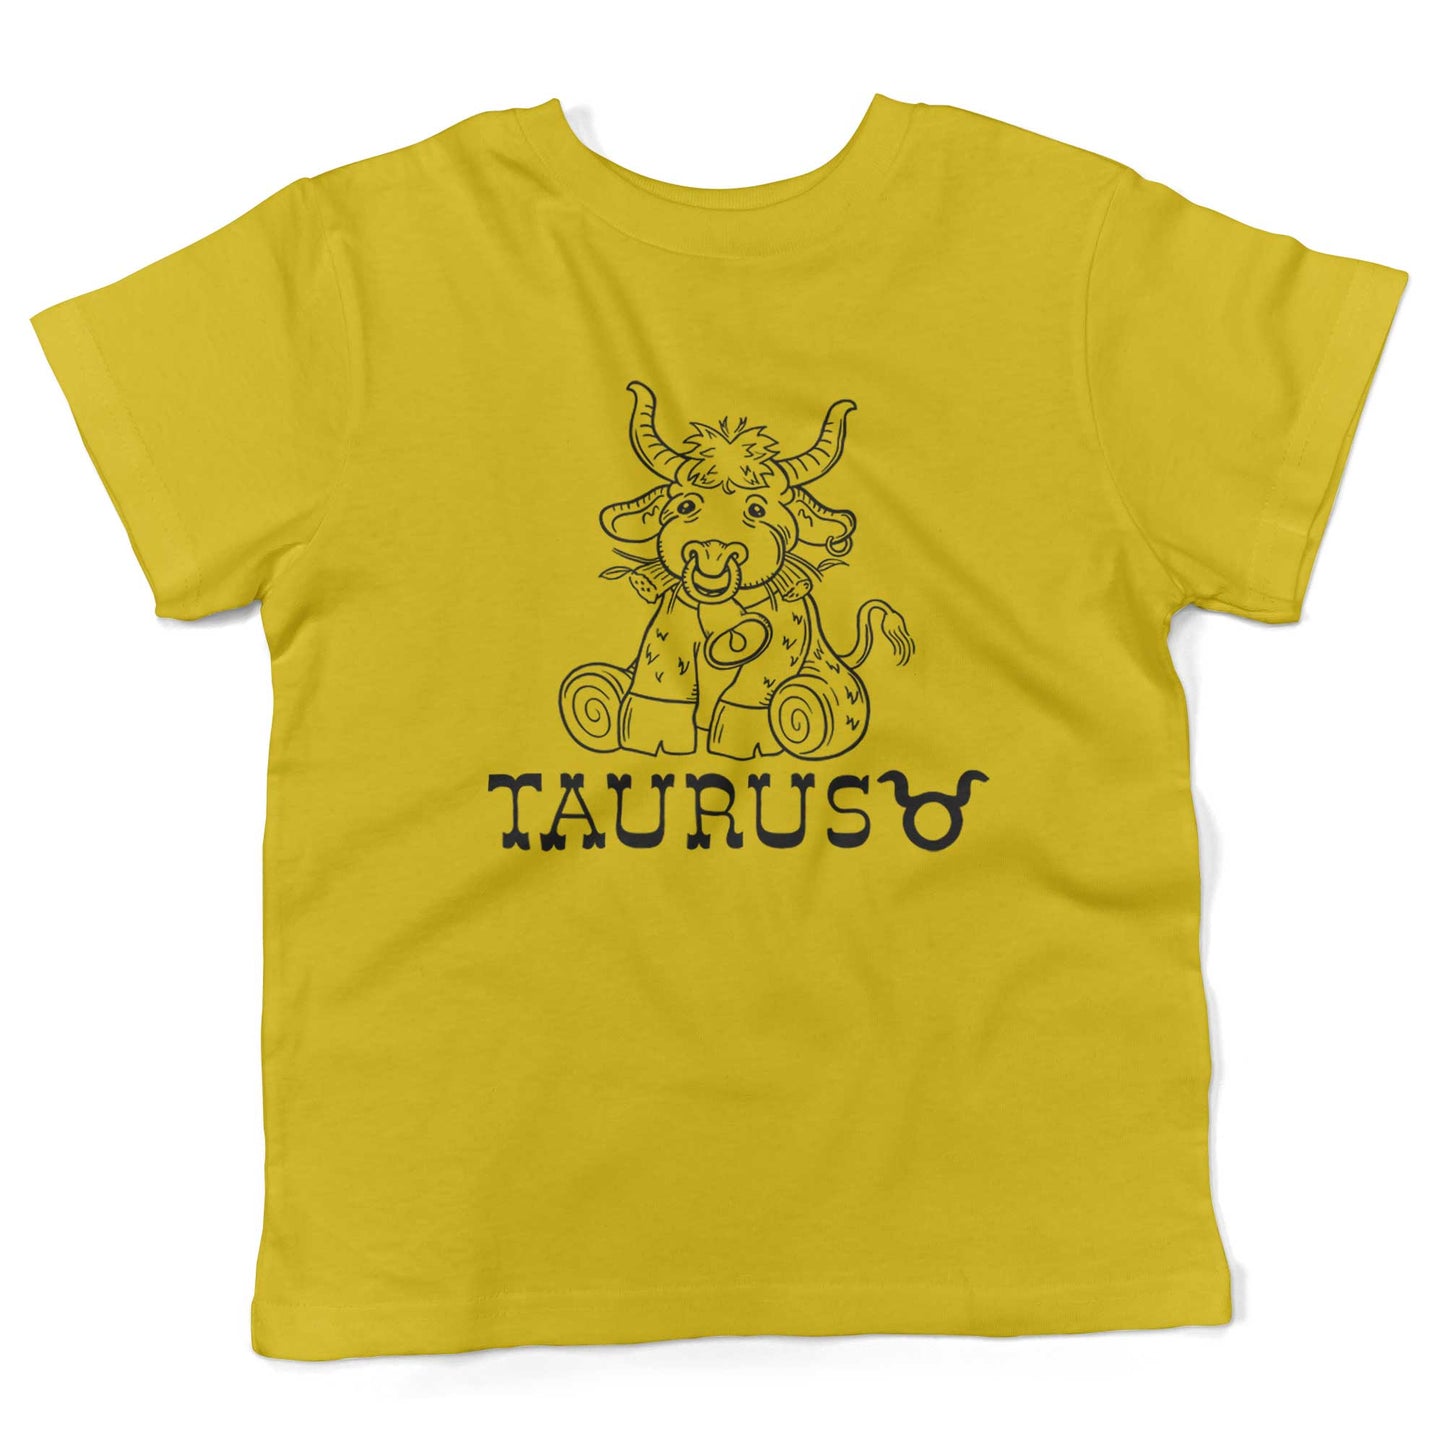 Taurus Cotton Toddler Shirt